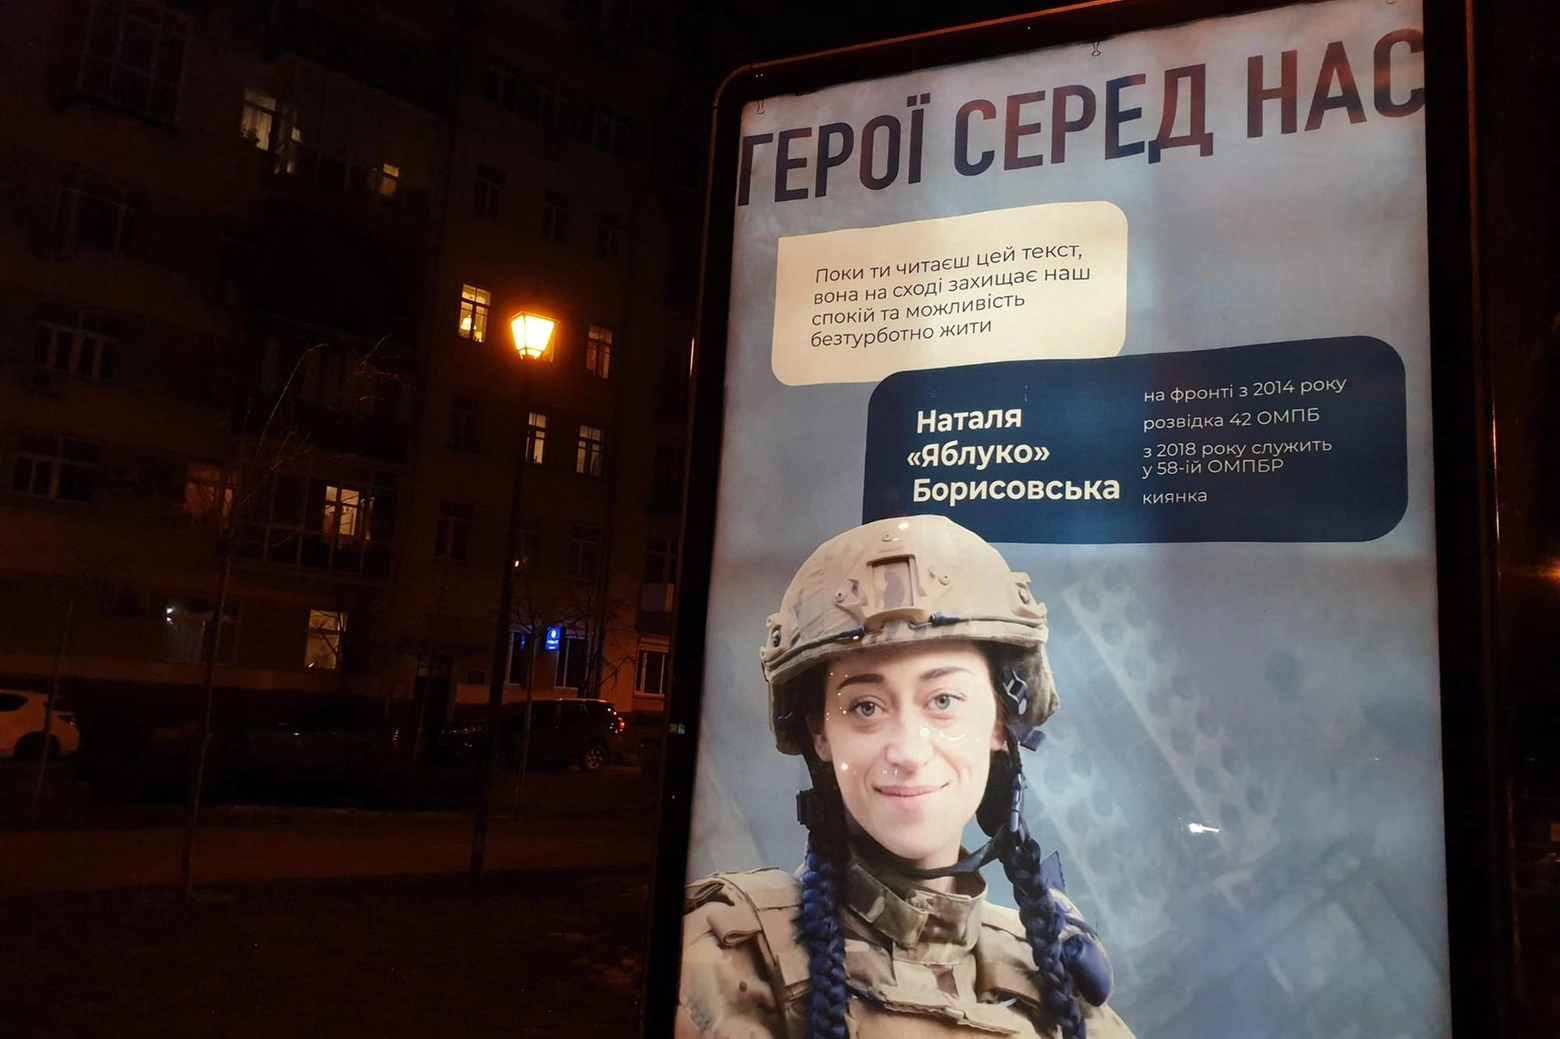 Manifesti propaganda Kiev, invito ai giovani ad arruolarsi